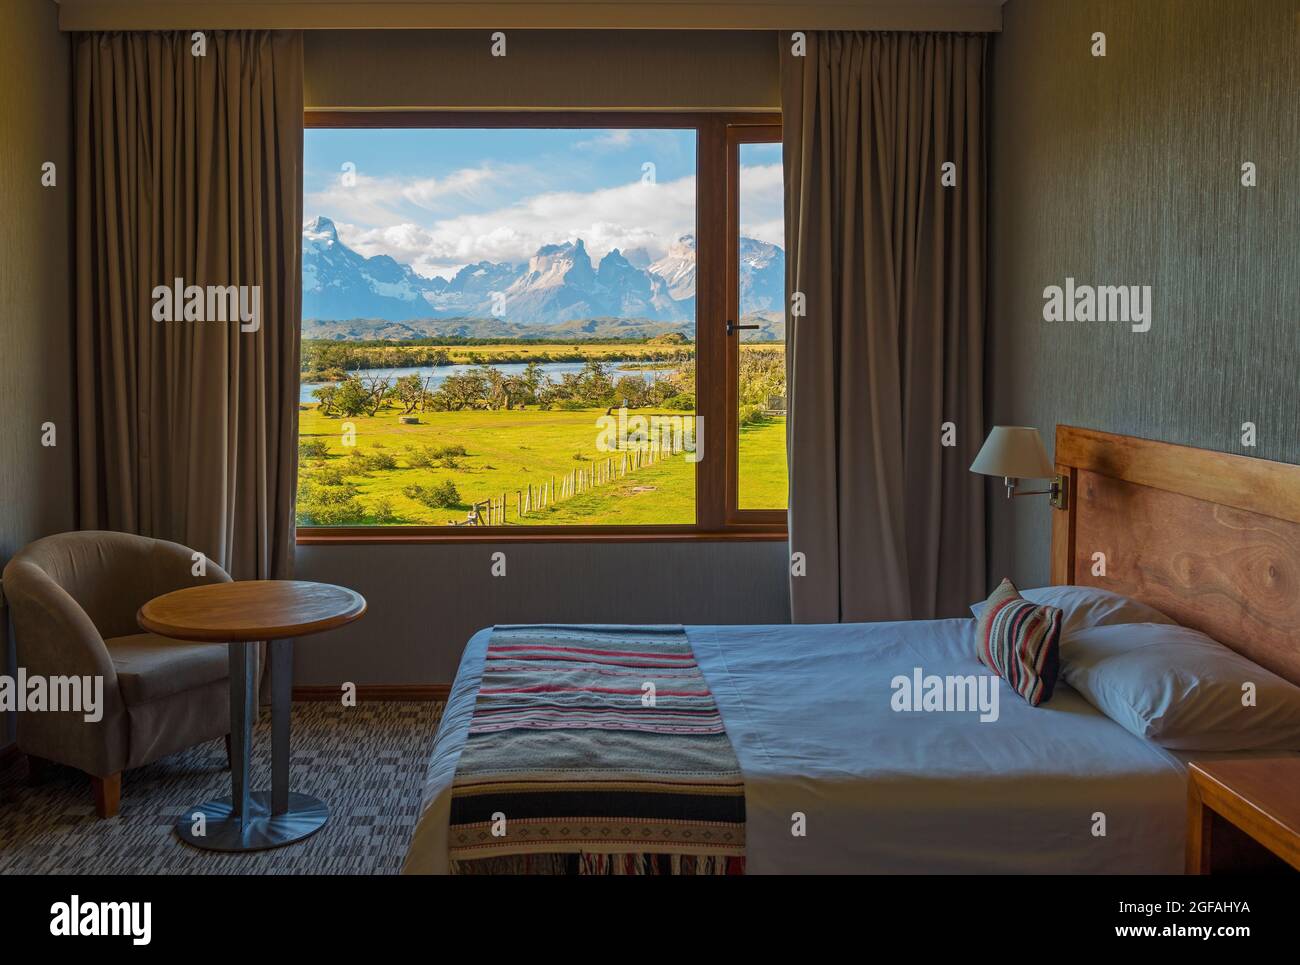 Hotelzimmer mit klassischem Design und offenen Vorhängen mit Blick auf den Cuernos del Paine, den Nationalpark Torres del Paine, Patagonien, Chile. Stockfoto